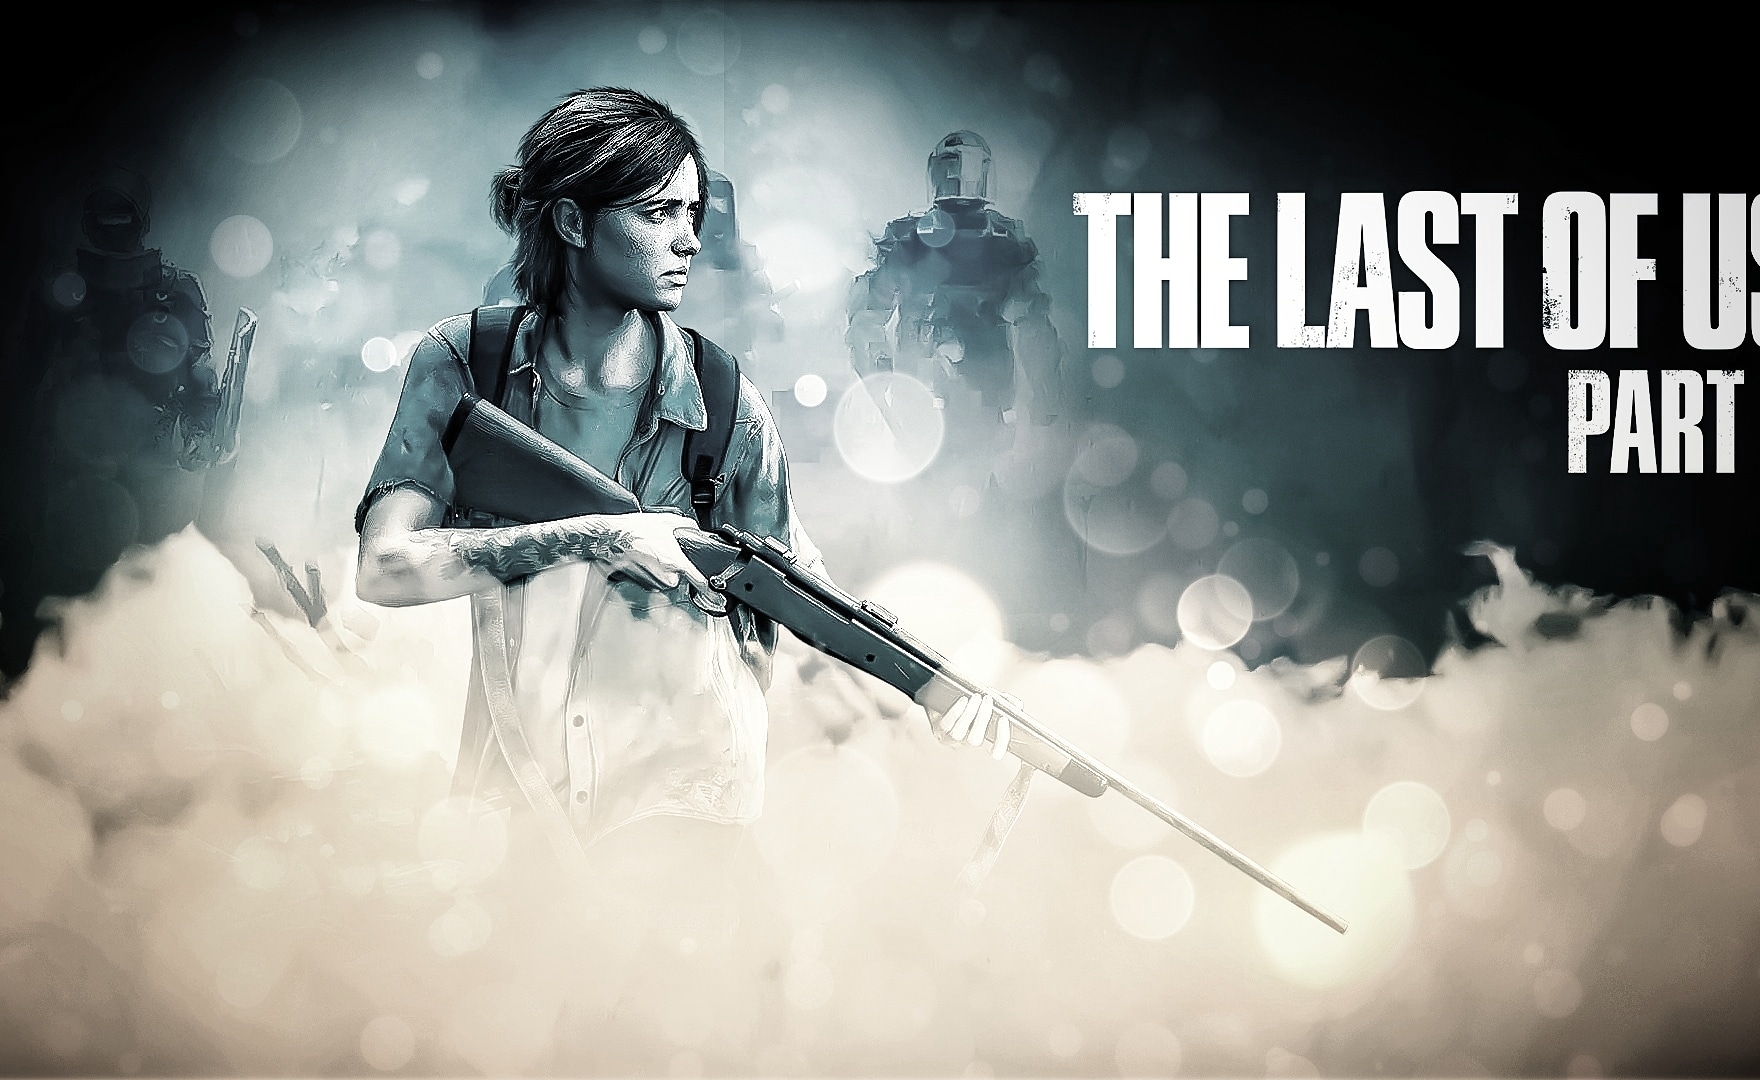 The Last of Us Part II, preordina la steelbook in sconto su Amazon!